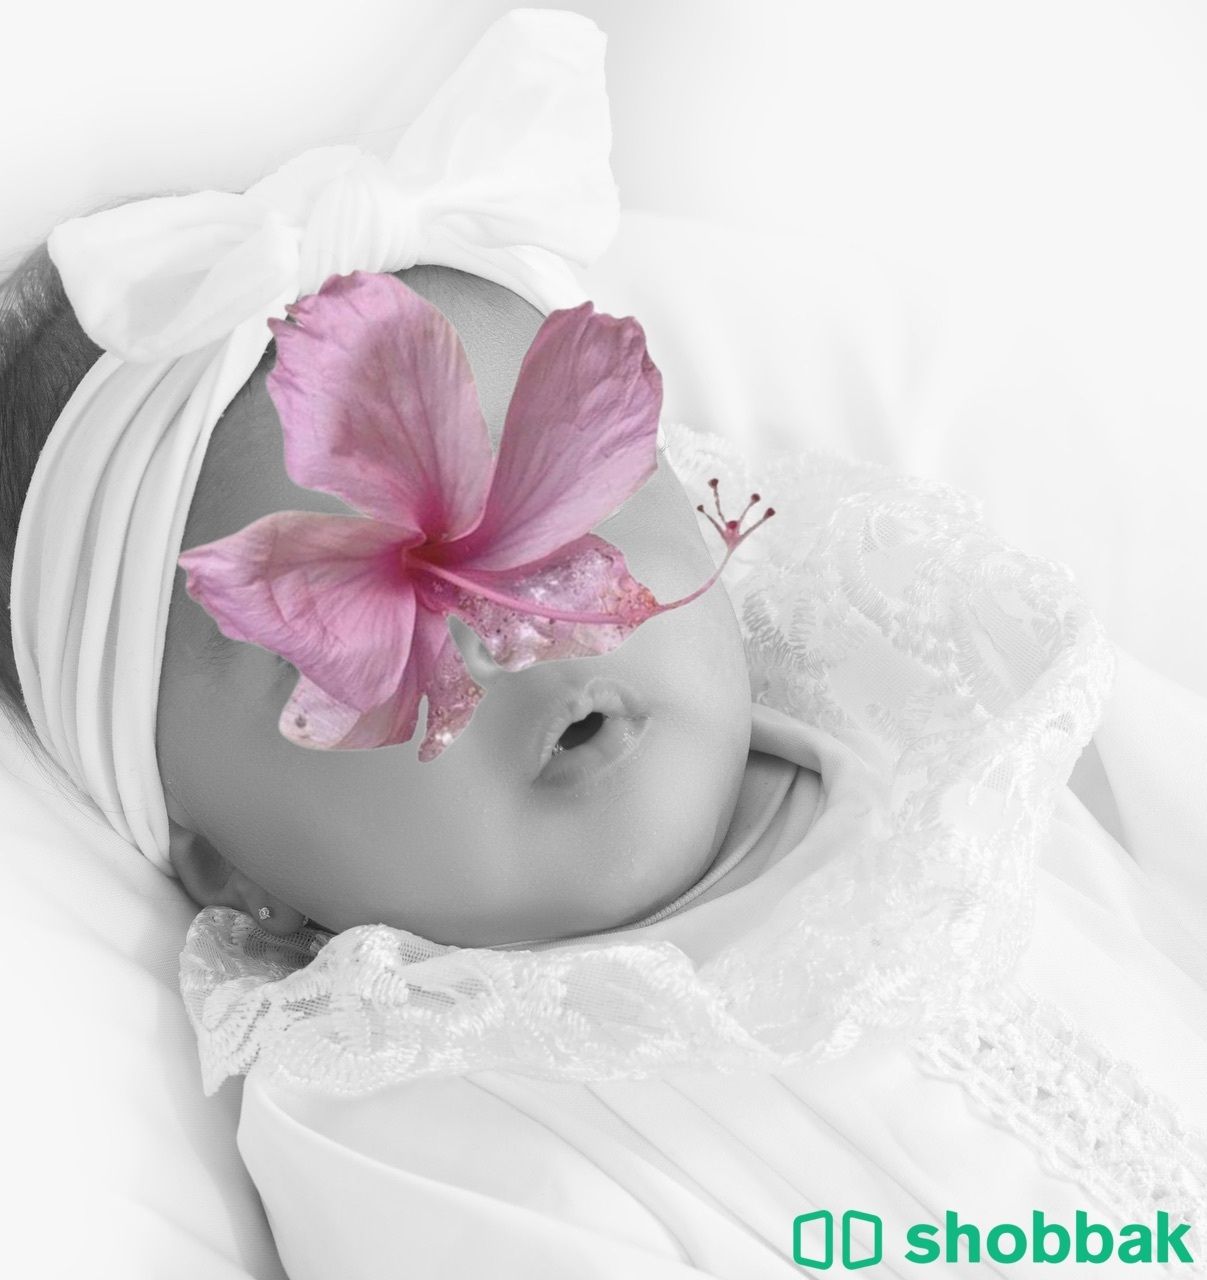 تصوير اطفال باسعار منافسة  Shobbak Saudi Arabia